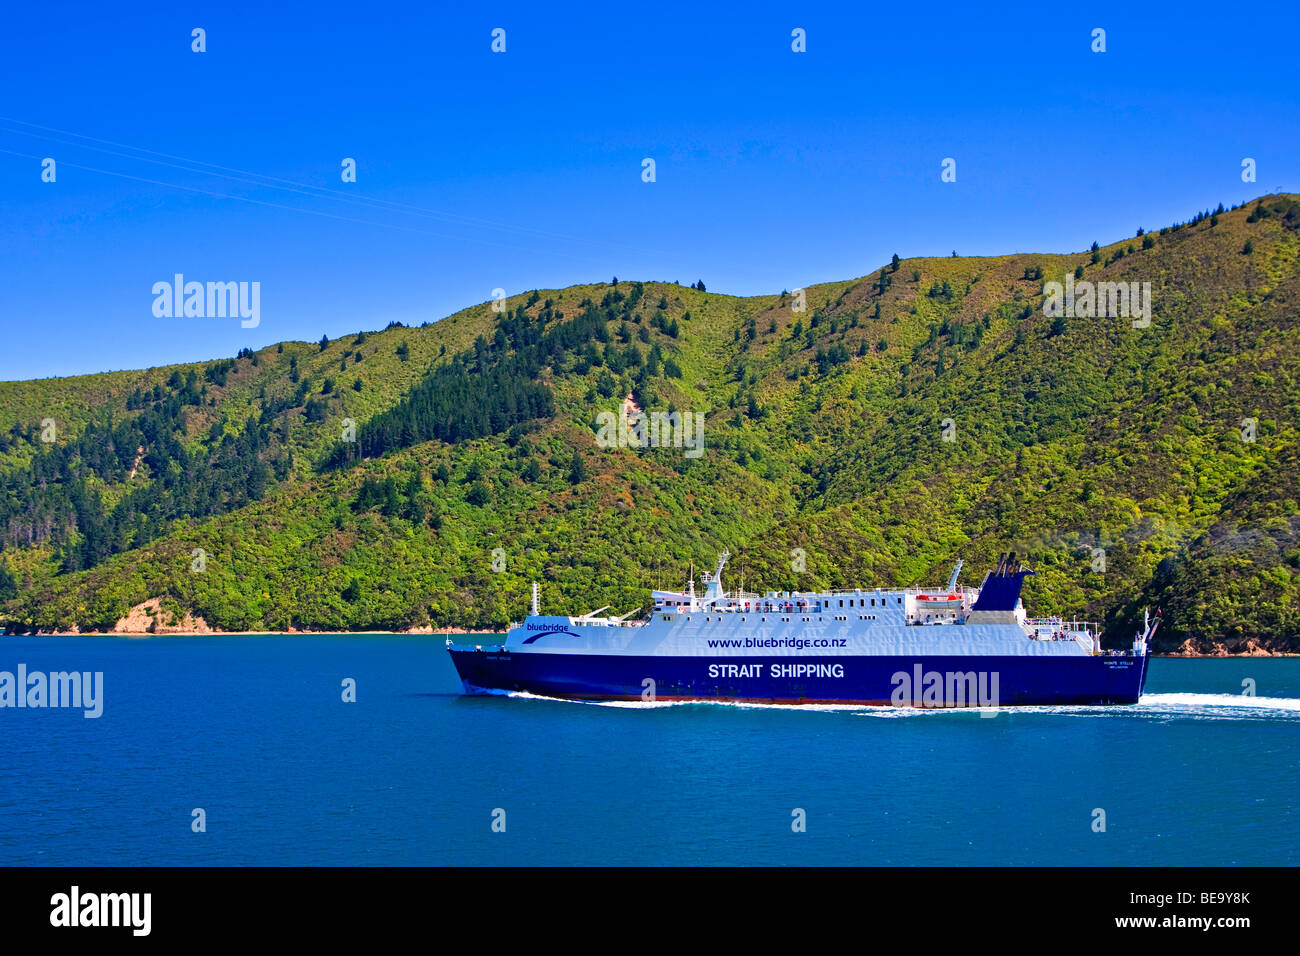 Bluebridge Fähre - Strait Shipping, Monte Stello, in der Tory Channel, Queen Charlotte Sound, Südinsel, Neuseeland. Stockfoto